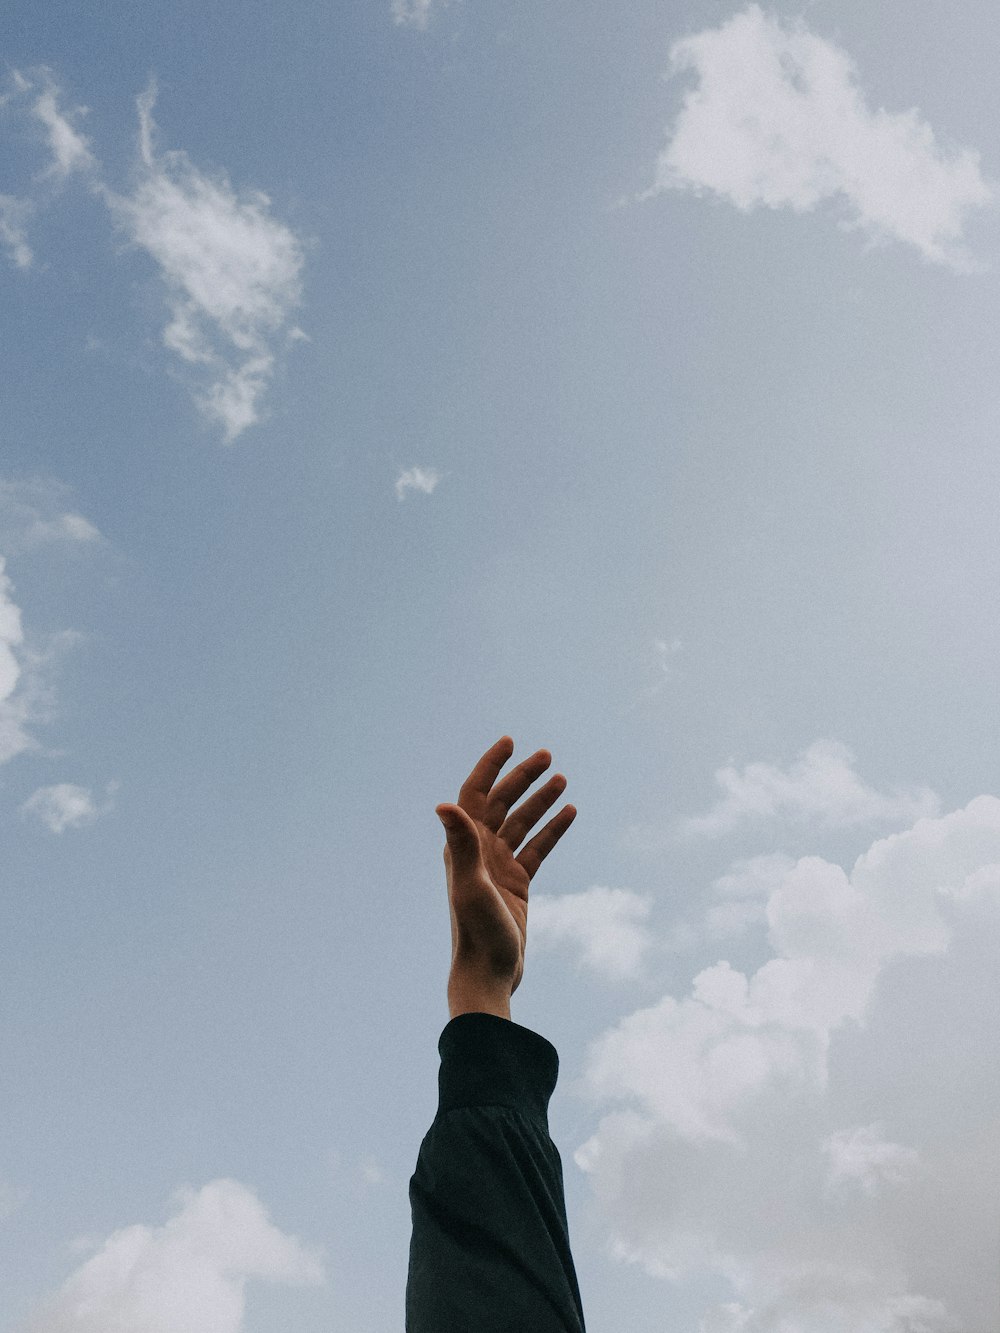 persona levantando la mano izquierda bajo el cielo nublado durante el día